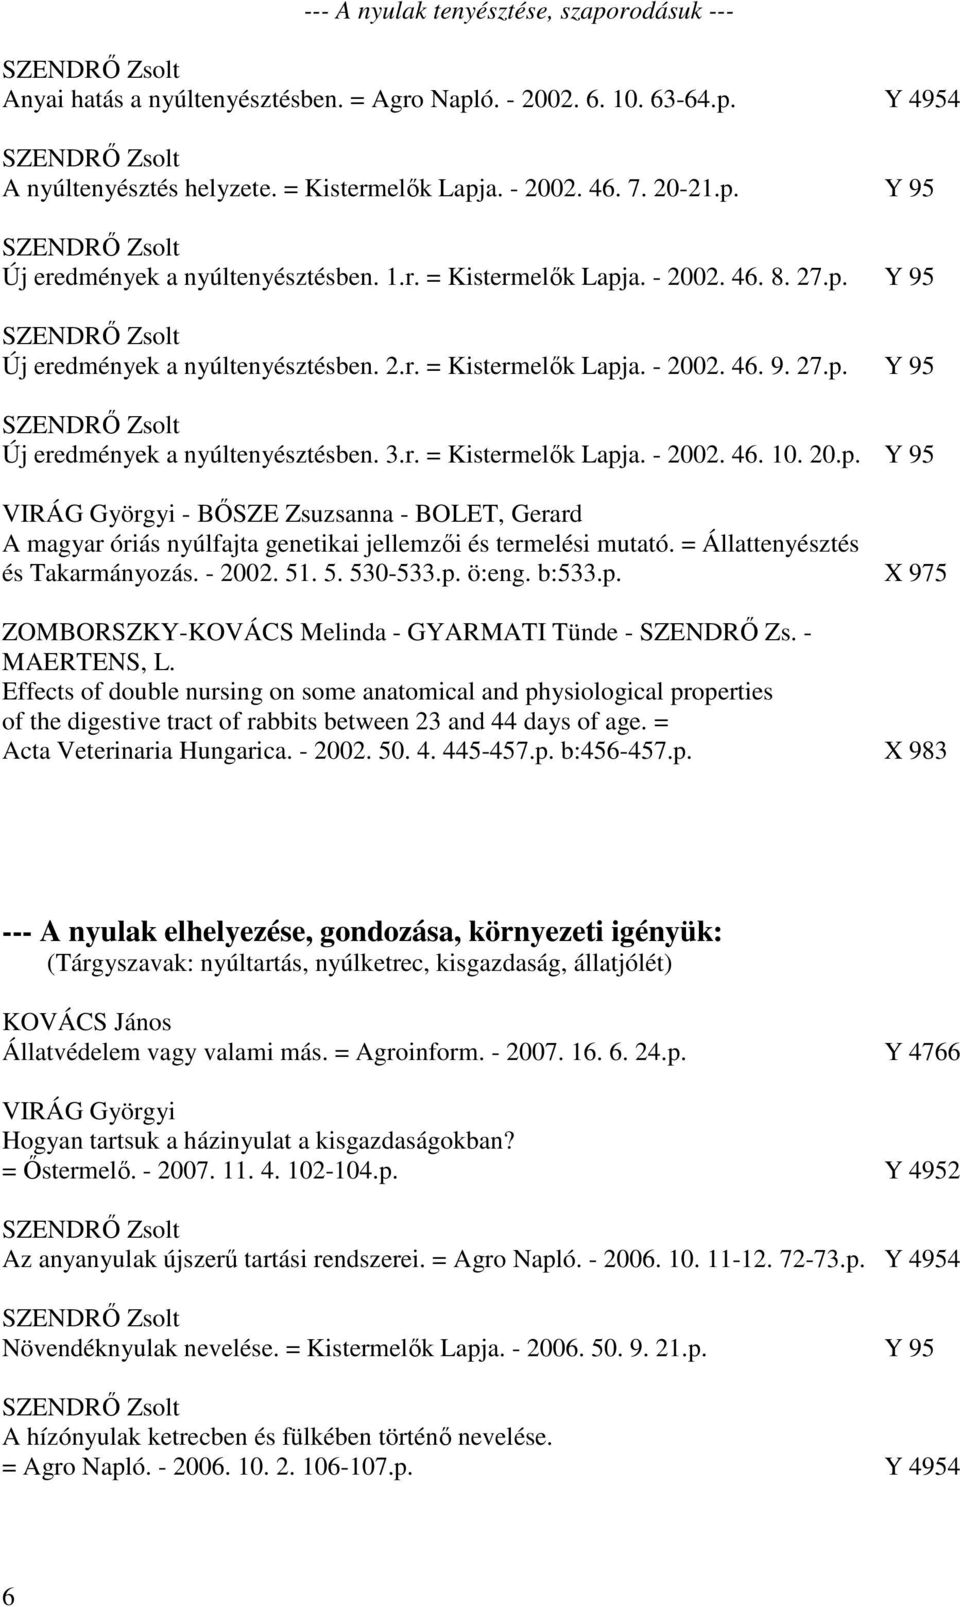 20.p. Y 95 VIRÁG Györgyi - BŐSZE Zsuzsanna - BOLET, Gerard A magyar óriás nyúlfajta genetikai jellemzői és termelési mutató. = Állattenyésztés és Takarmányozás. - 2002. 51. 5. 530-533.p. ö:eng. b:533.